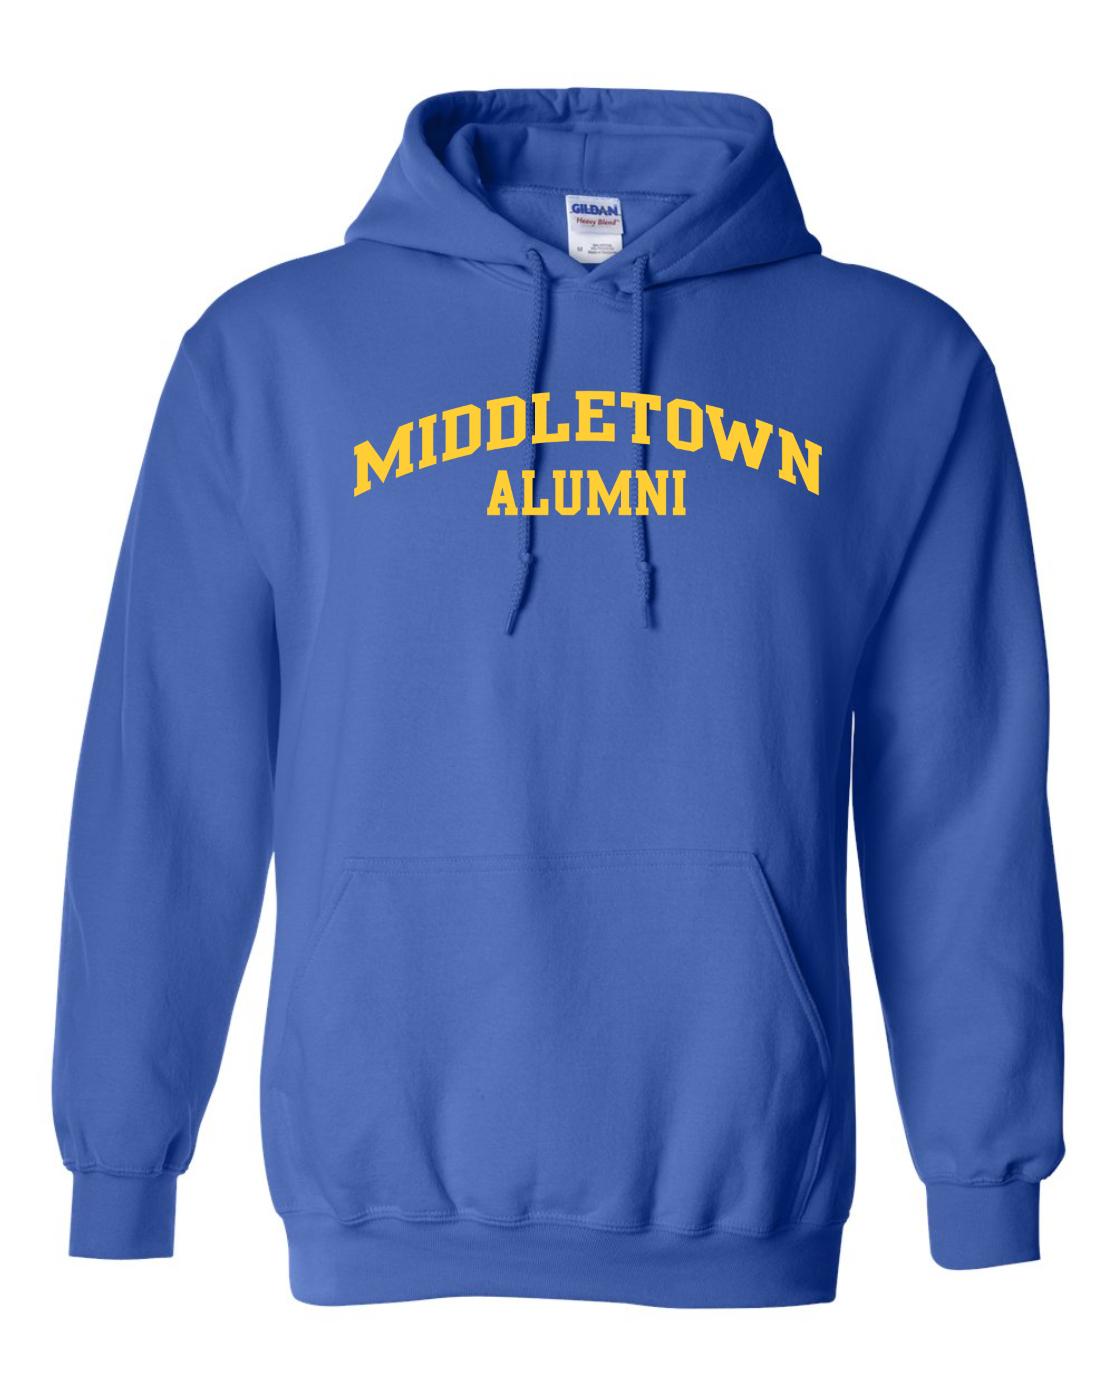 Middletown Standard Hoodie - ALUMNI